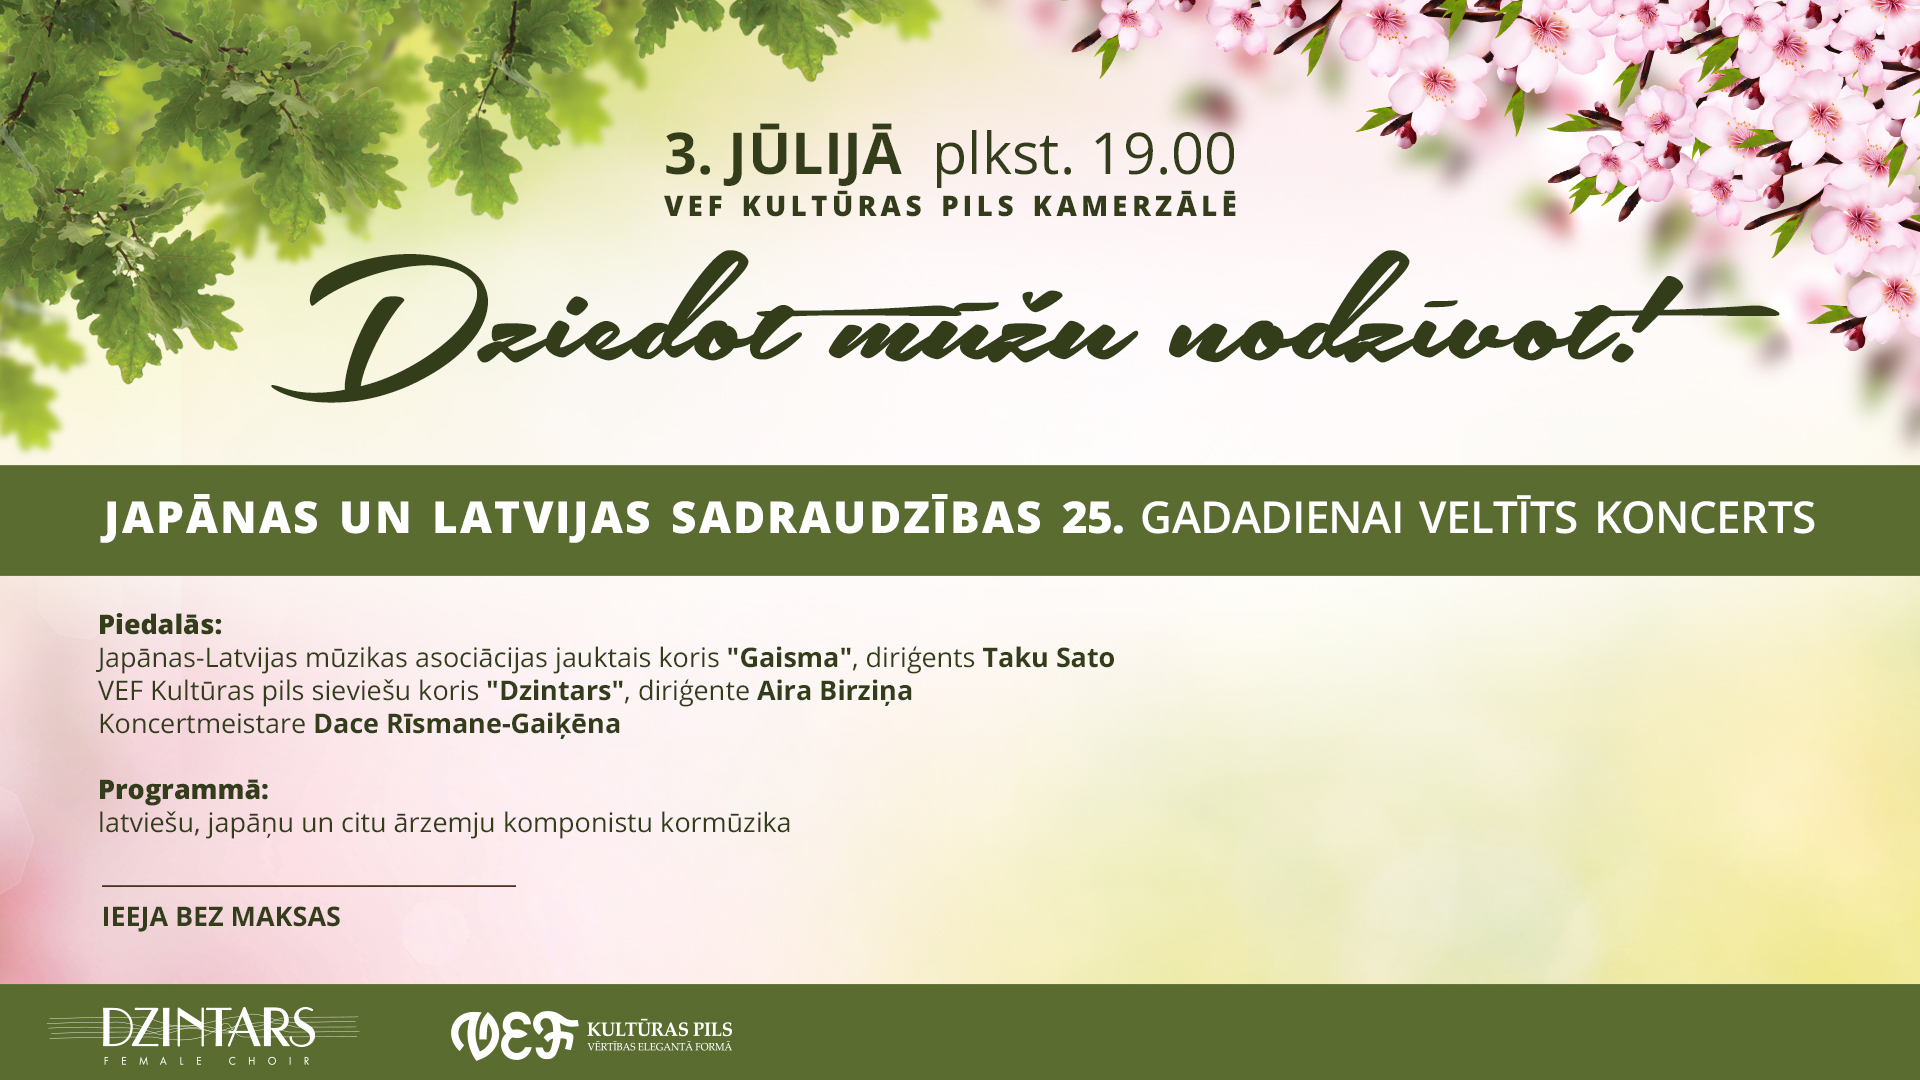 Japānas-Latvijas mūzikas asociācijas jauktais koris “Gaisma” godina Dziesmu svētkus un viesojas Latvijā